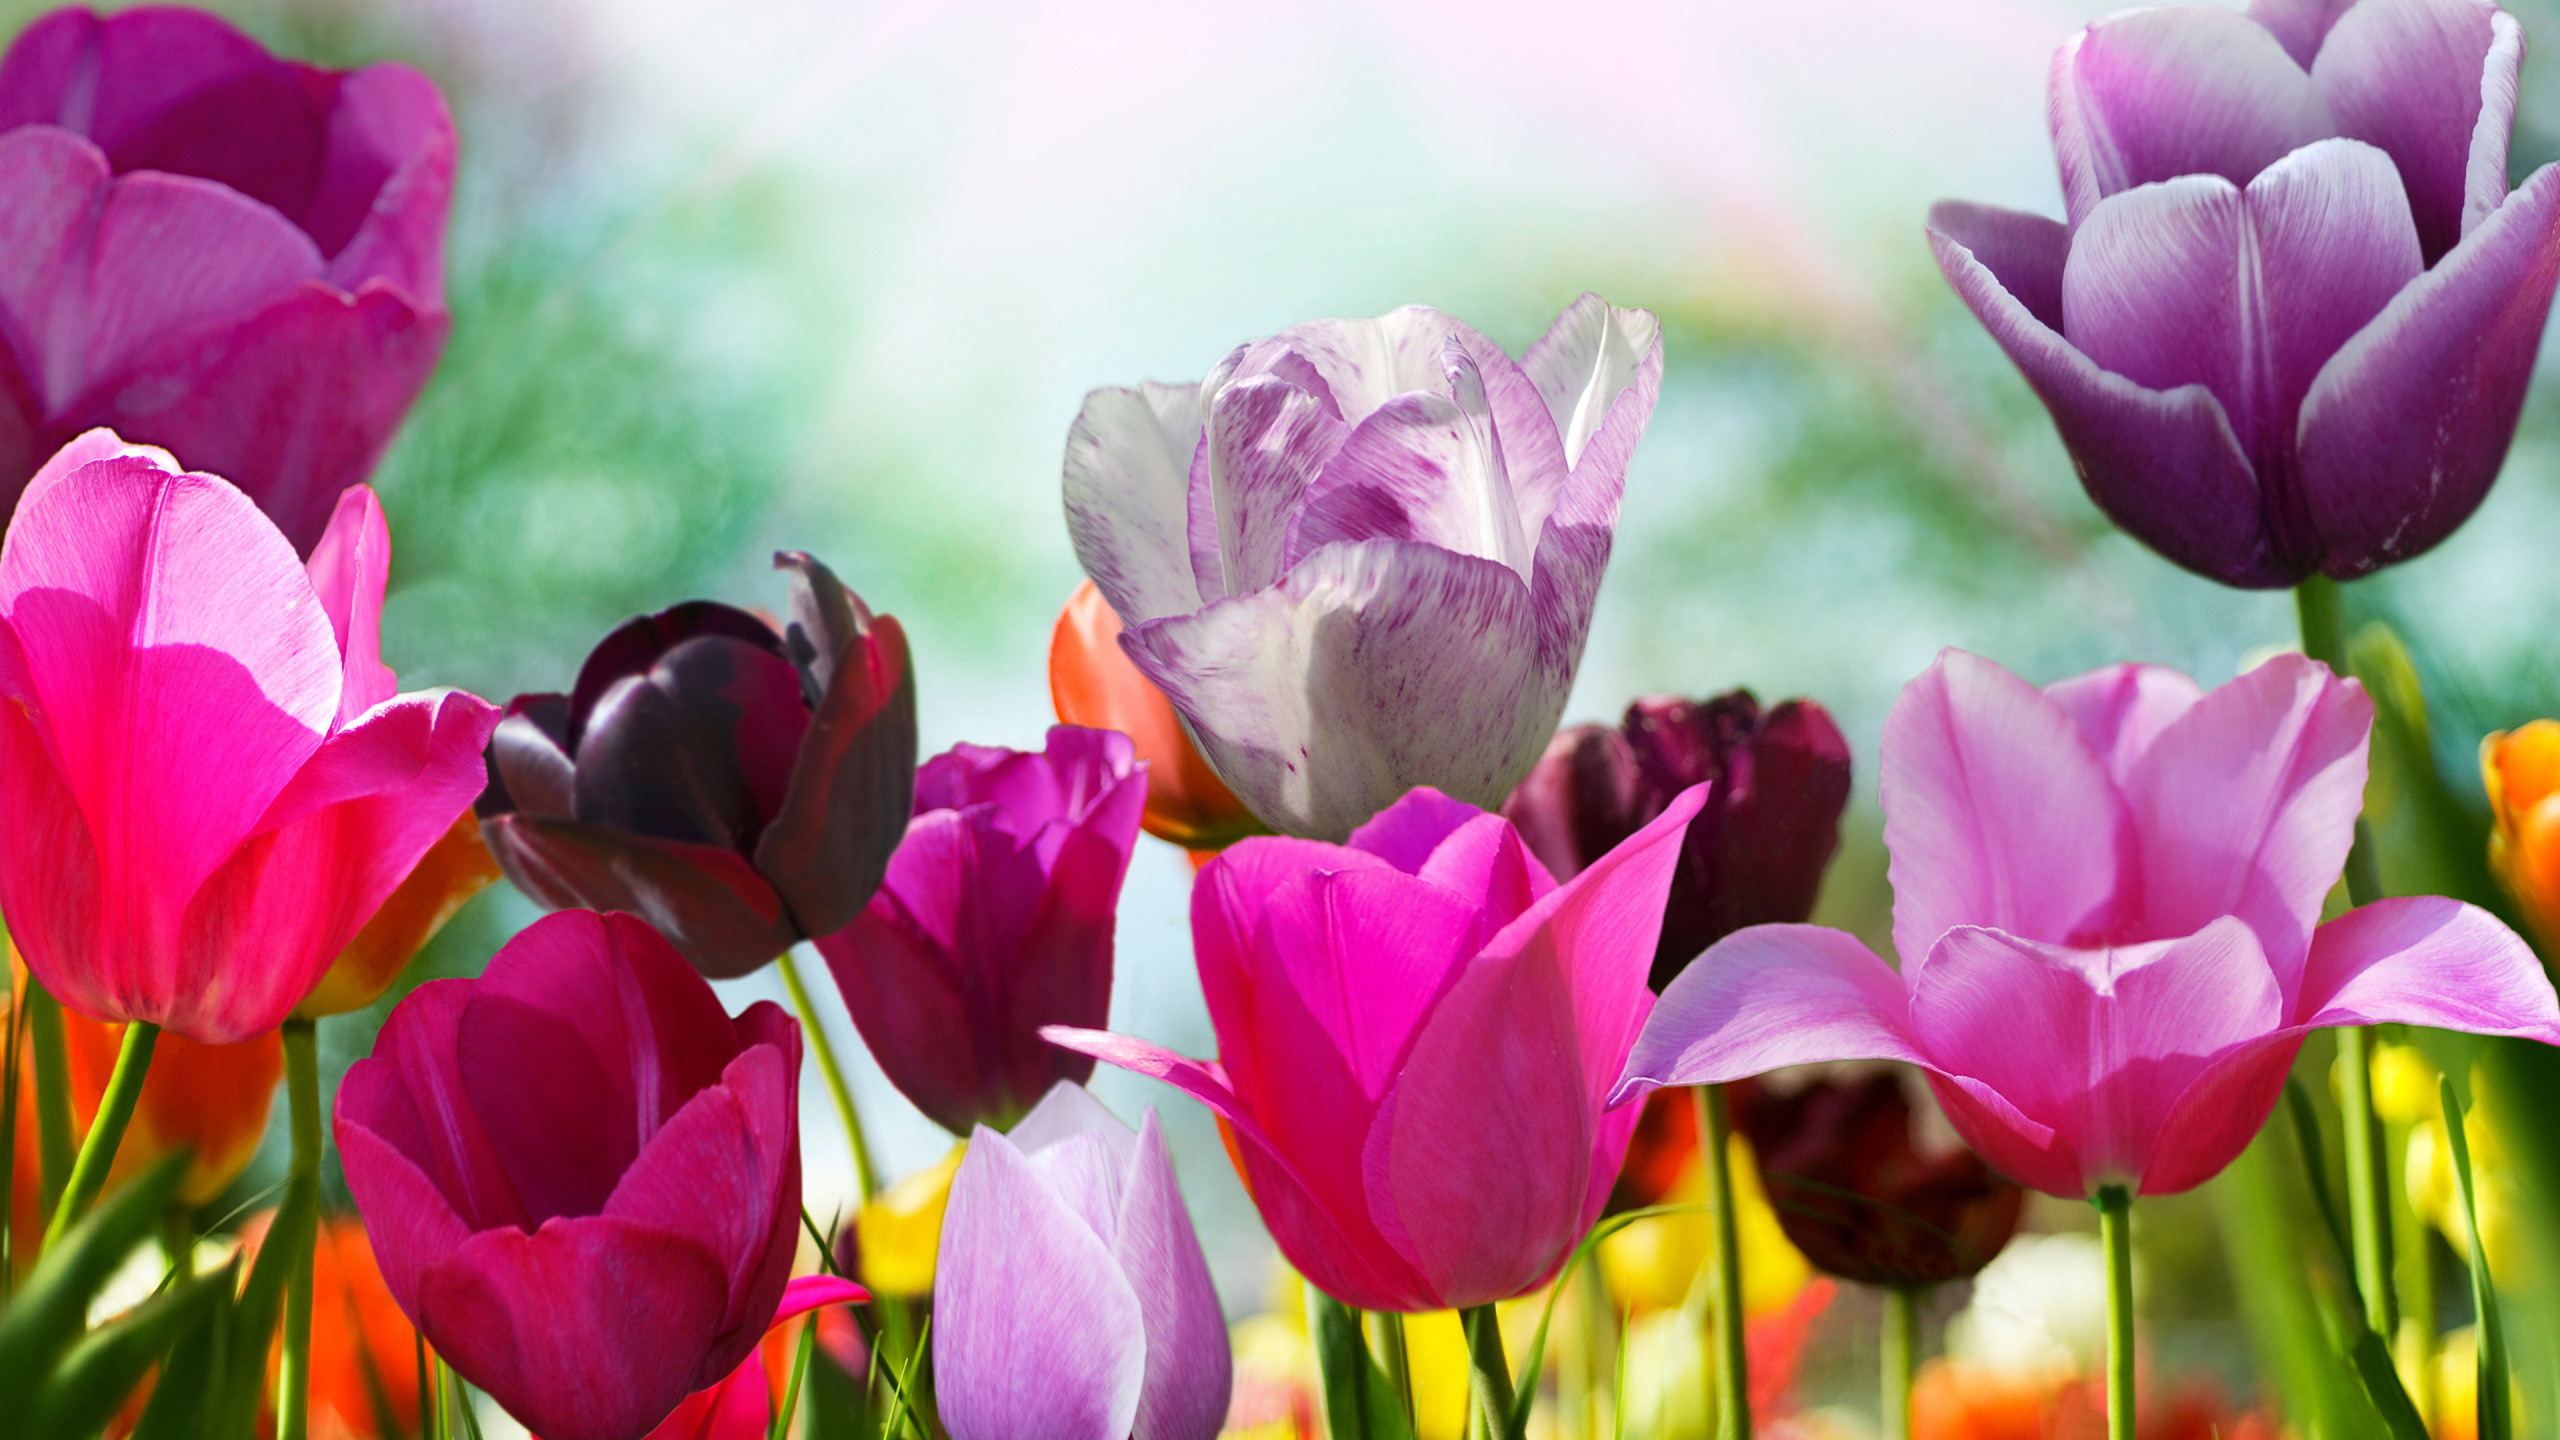 弹簧, 显花植物, 紫色的, 粉红色, 藏红花 壁纸 2560x1440 允许